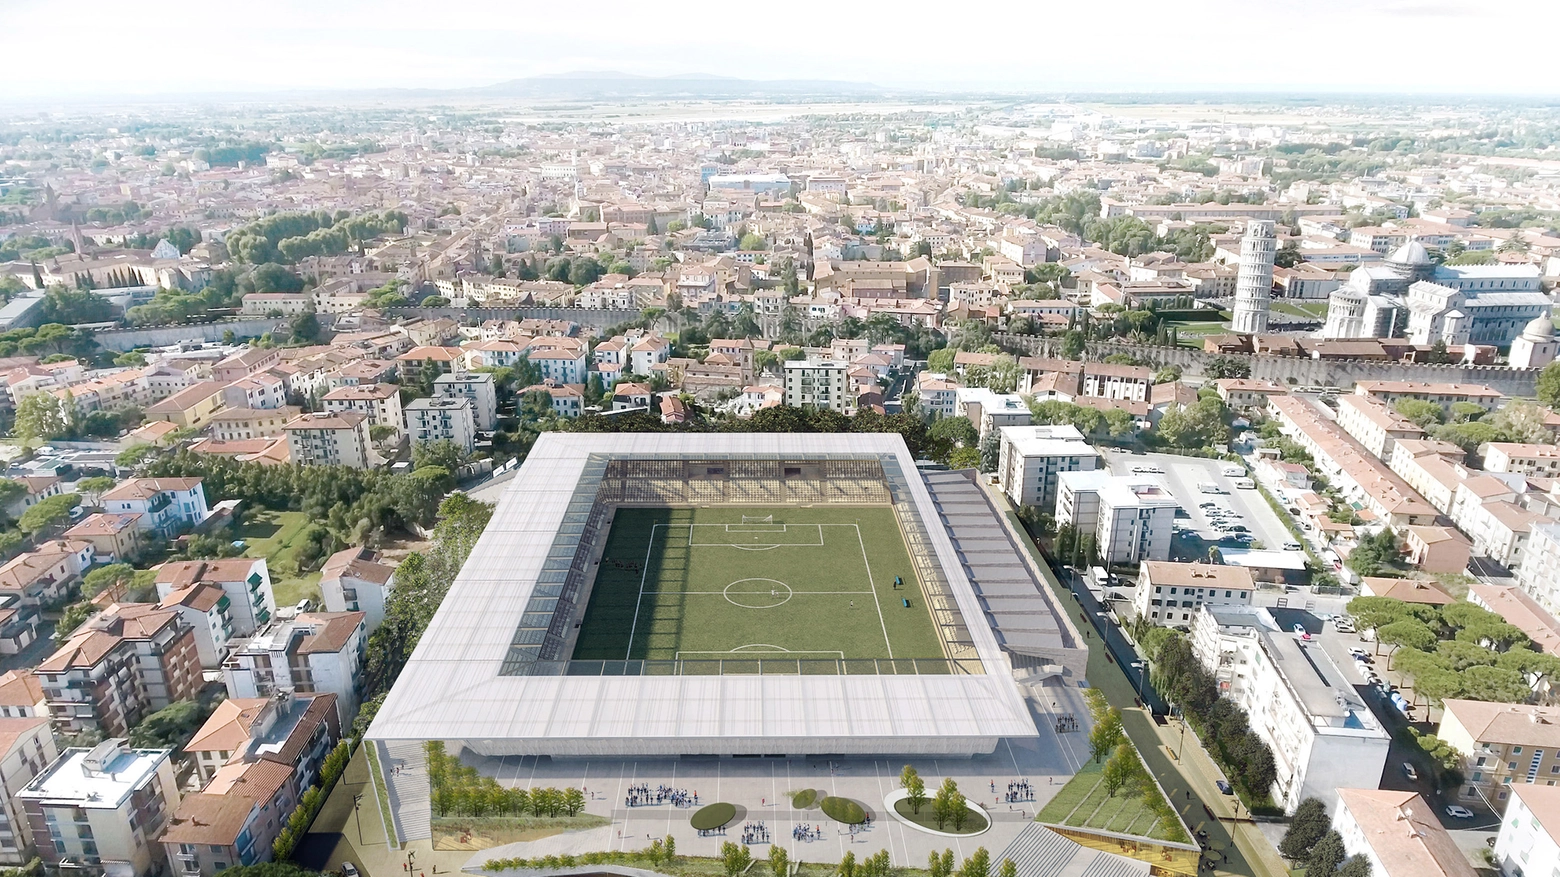 Nuova Arena Garibaldi: il progetto dello studio Iotti-Pavarani